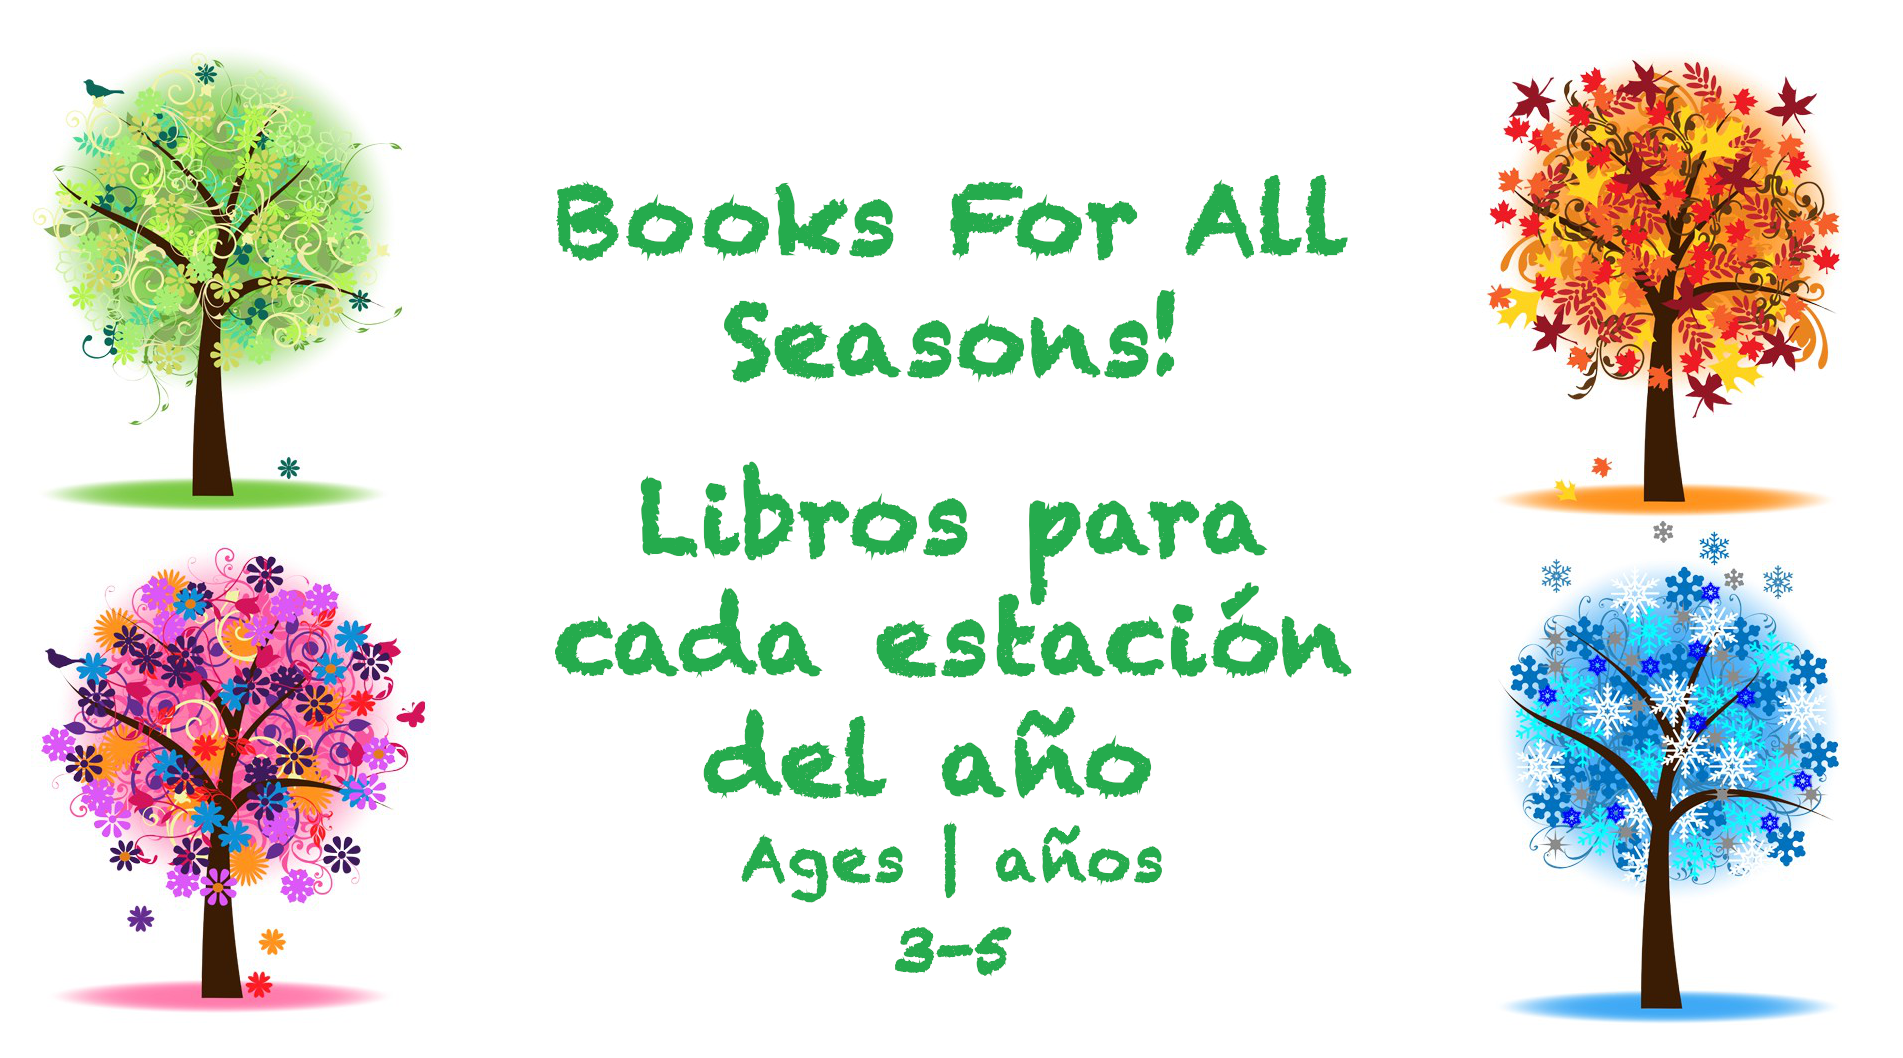 Semana 26 Tarjeta de libros para todas las estaciones del año de 3 a 5 años